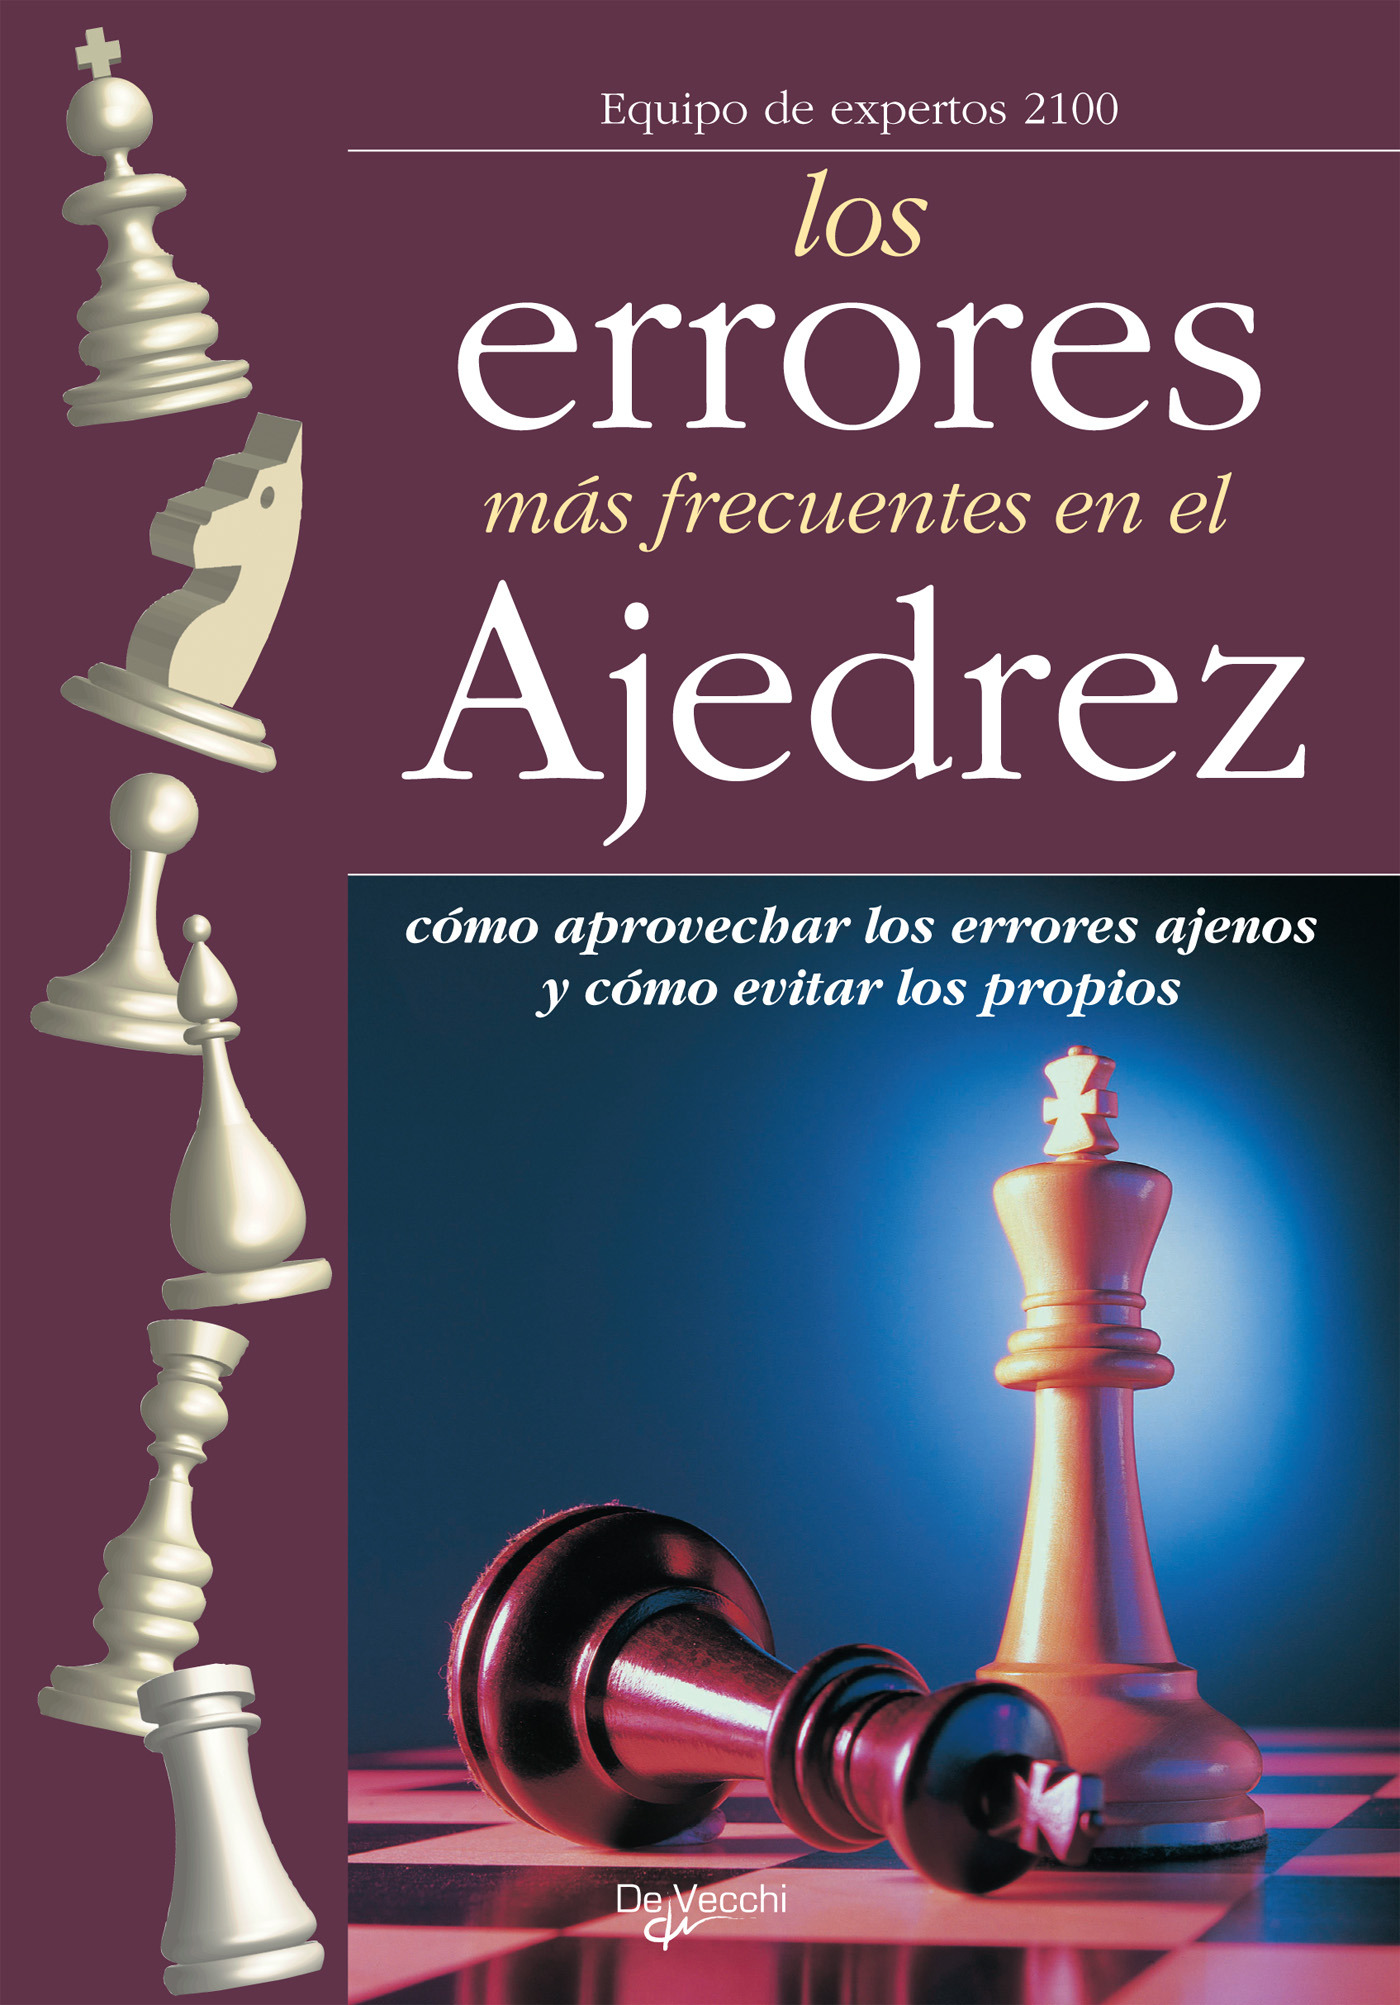 2100, Equipo de expertos 2100 Equipo de expertos - Errores en el ajedrez, ebook